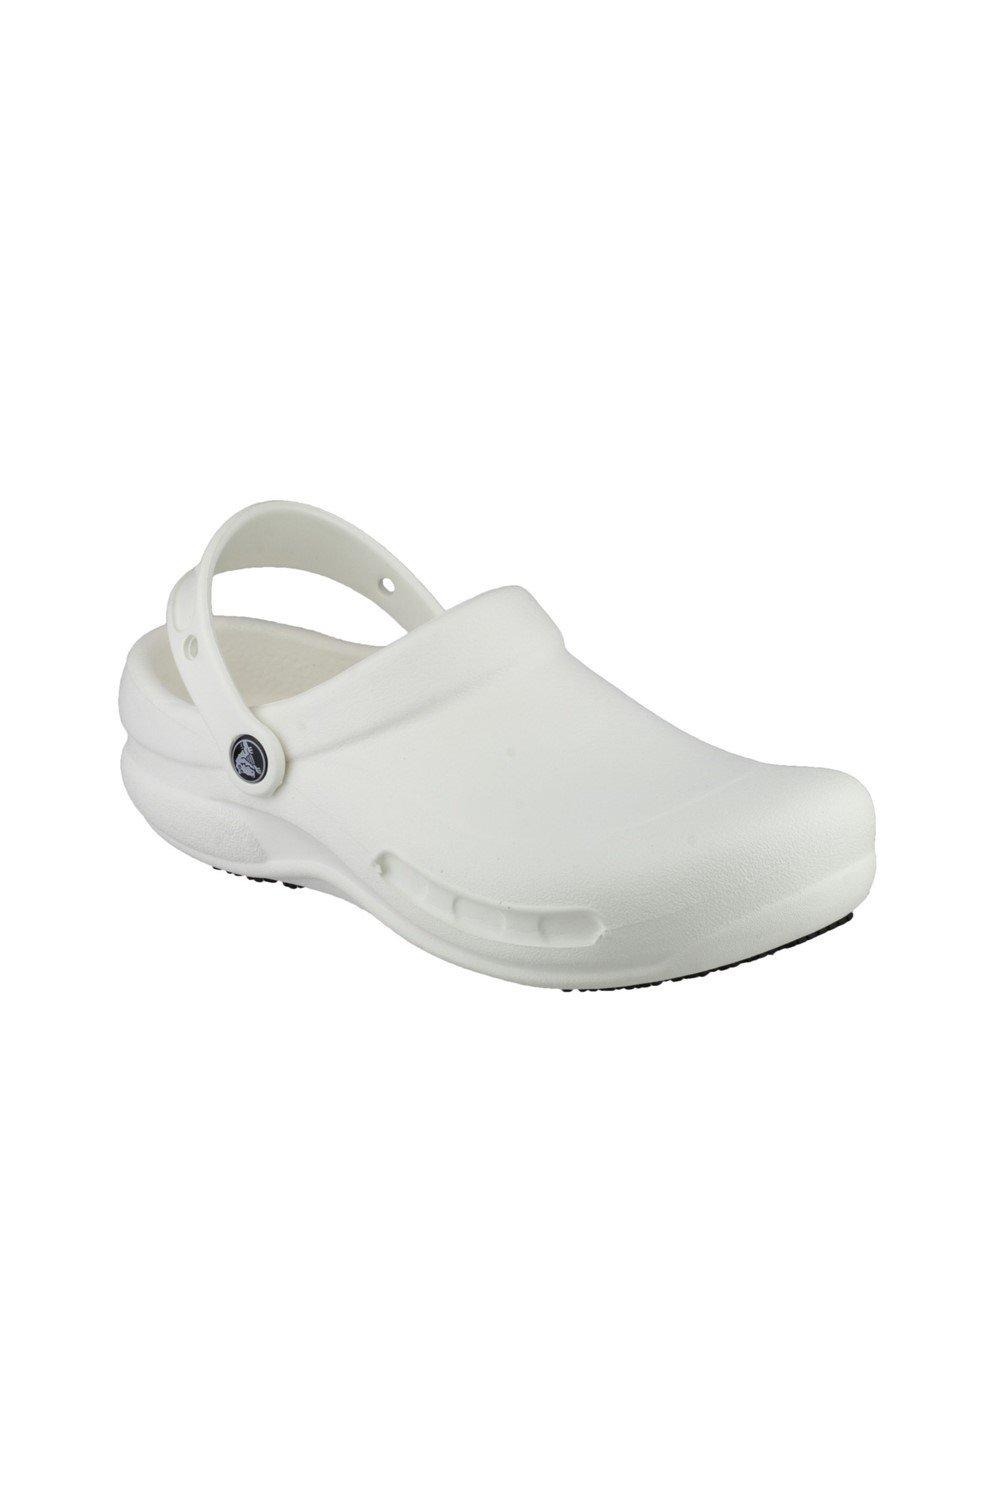 Туфли-слипоны из термопластика Бистро Crocs, белый туфли без шнуровки из термопластика сезонный камуфляж crocs серый